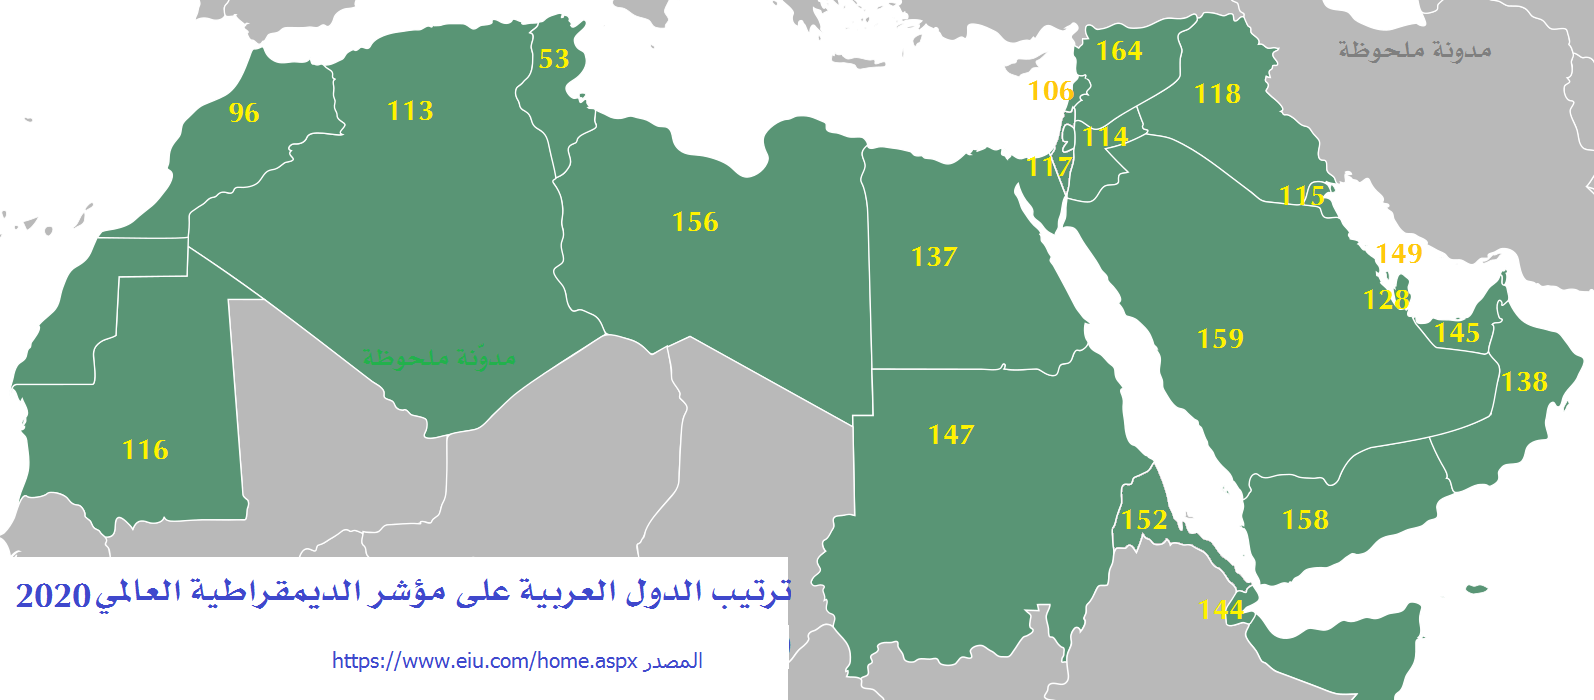 ترتيب الدول العربية في مؤشر الديمقراطية 2020